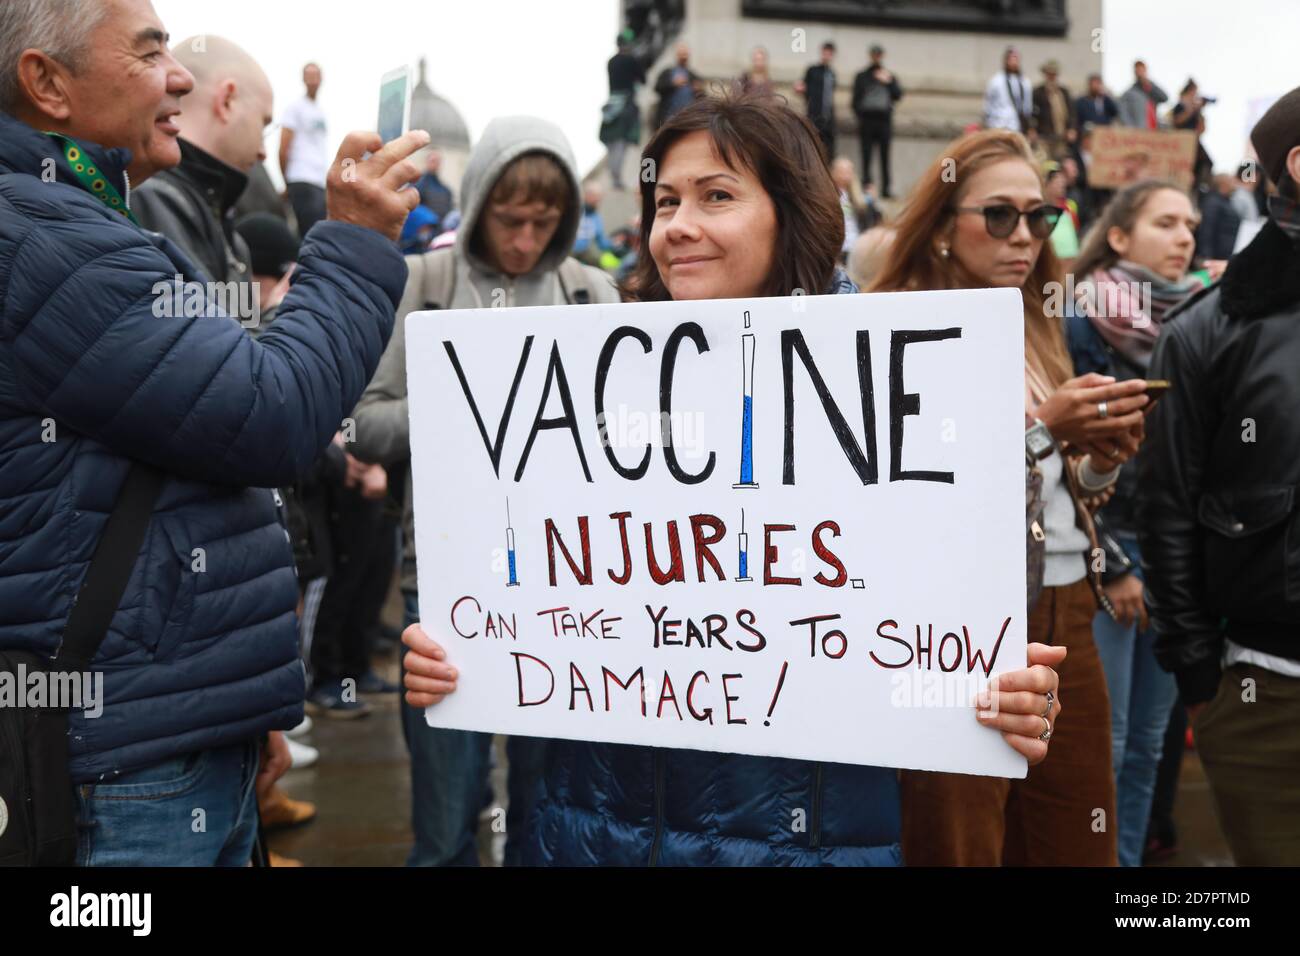 Unite per la libertà anti lockdown, anti vaccino dimostrazione - Trafalgar Square, Londra, 24 ottobre 2020: Credit Natasha Quarmby/ALAMY LIVE NEWS Foto Stock